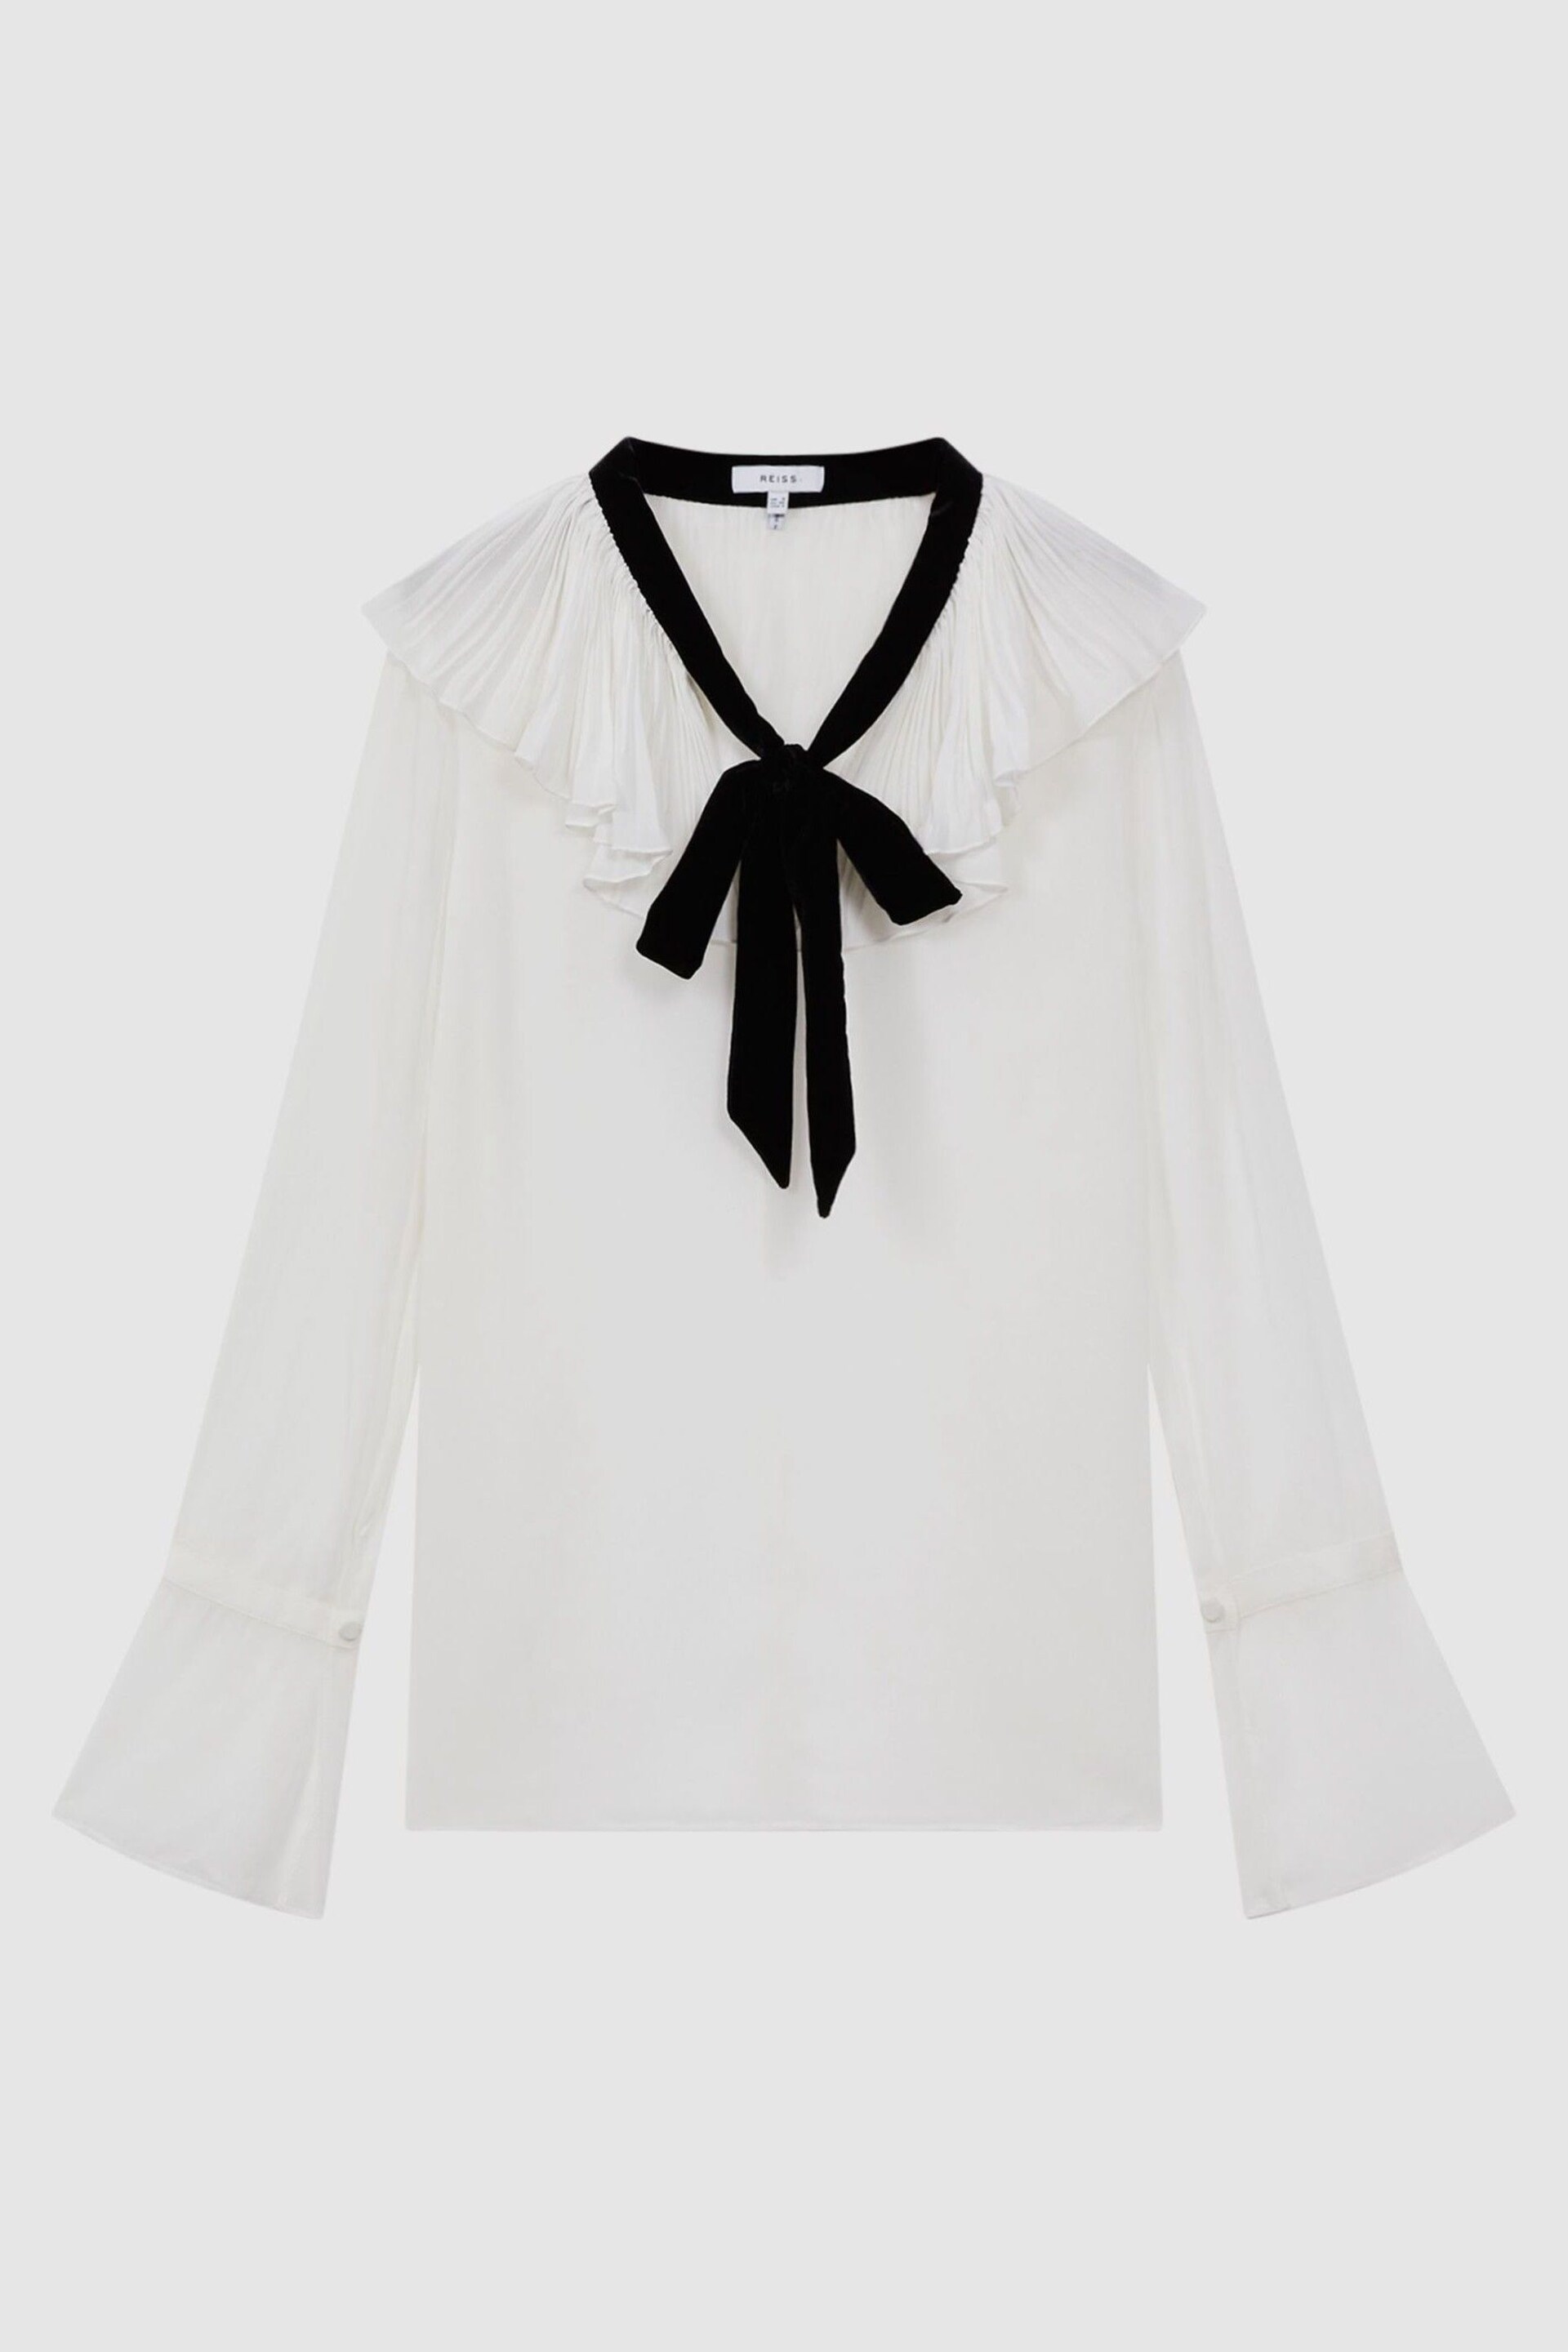 Reiss Cream/Black Azariah Sheer Ruffle Velvet Tie-Neck Blouse - Image 2 of 5